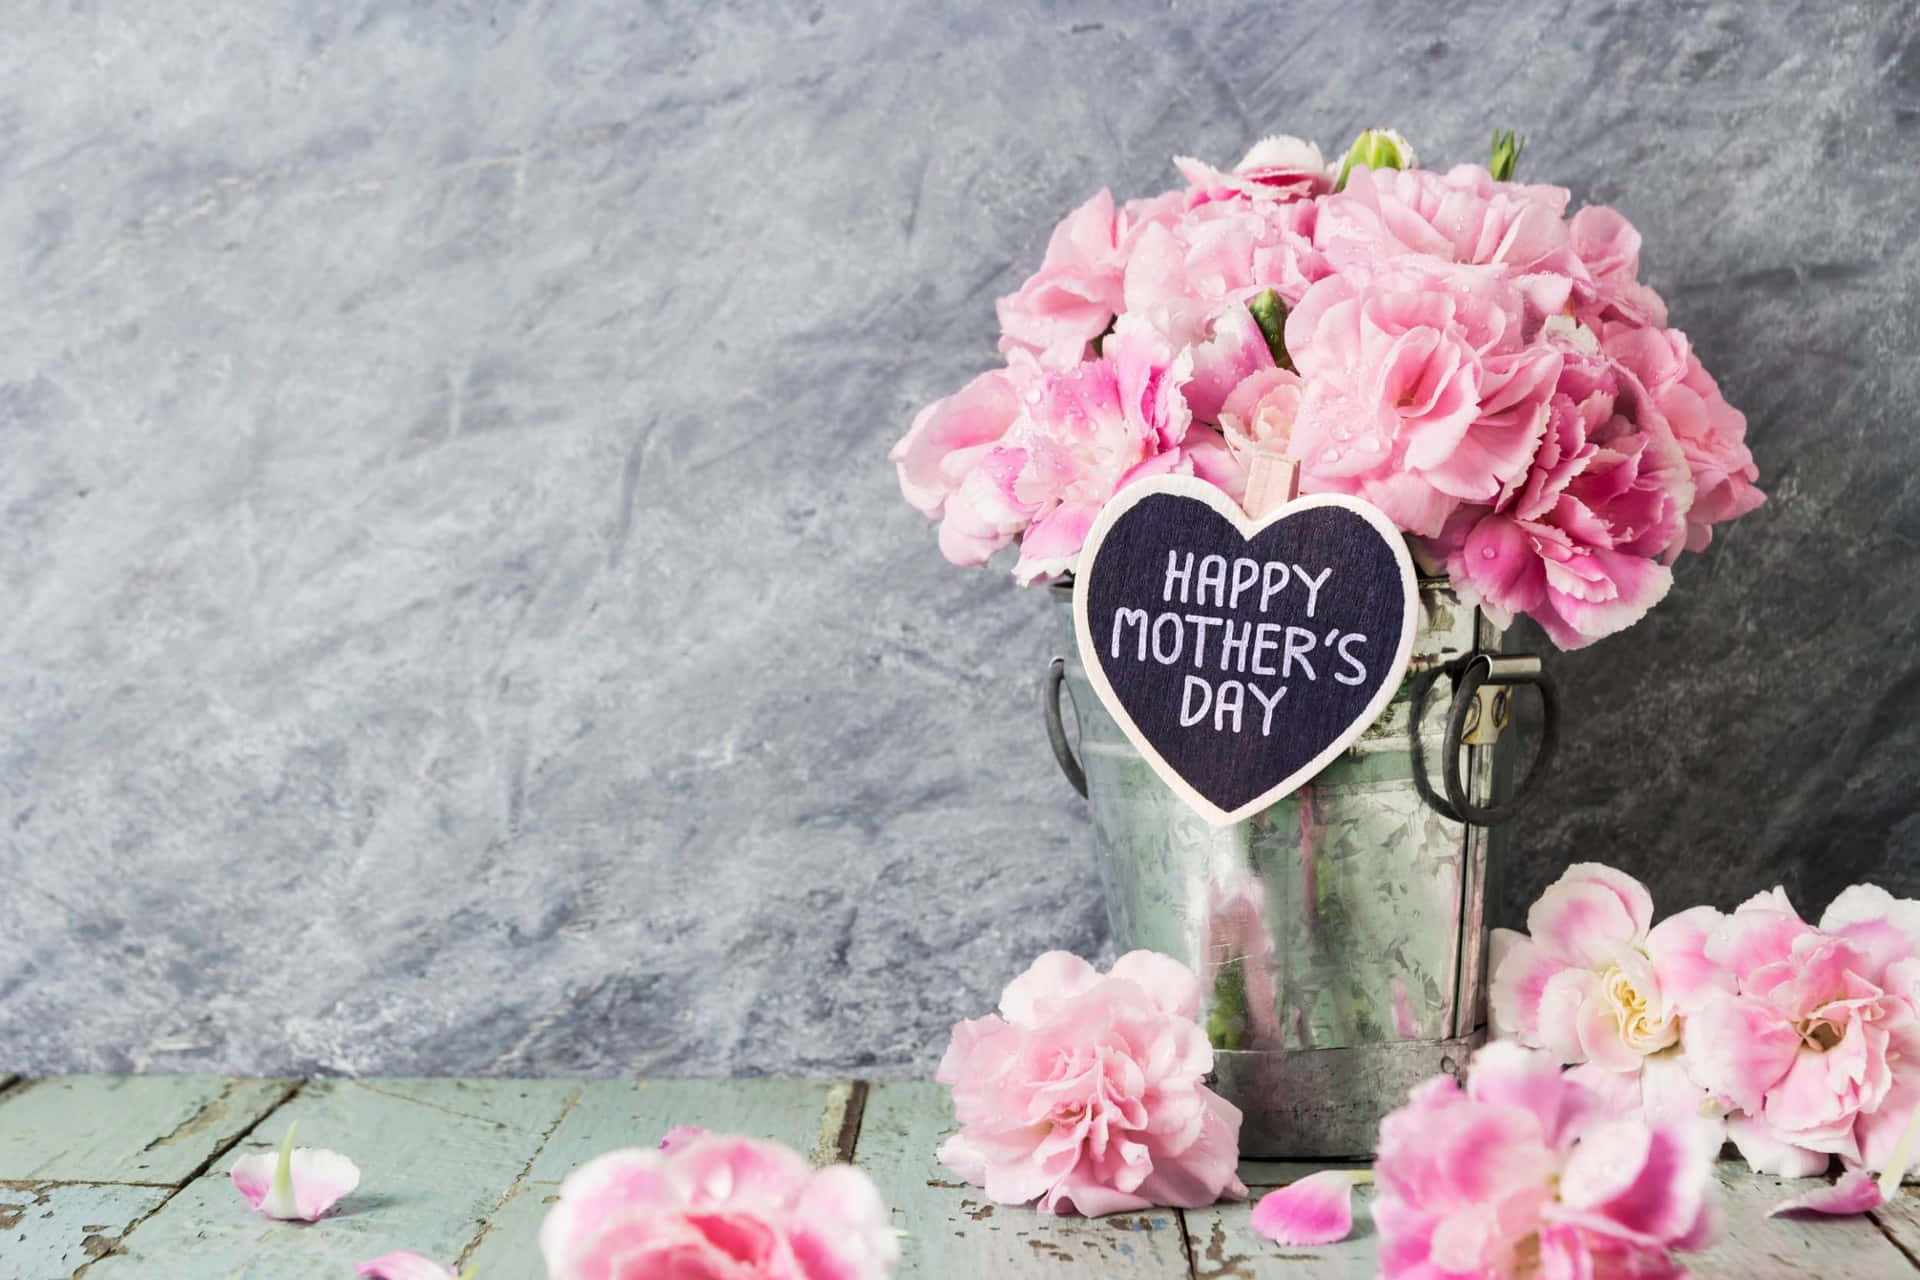 Felizdía De La Madre Con Flores Rosadas En Un Cubo